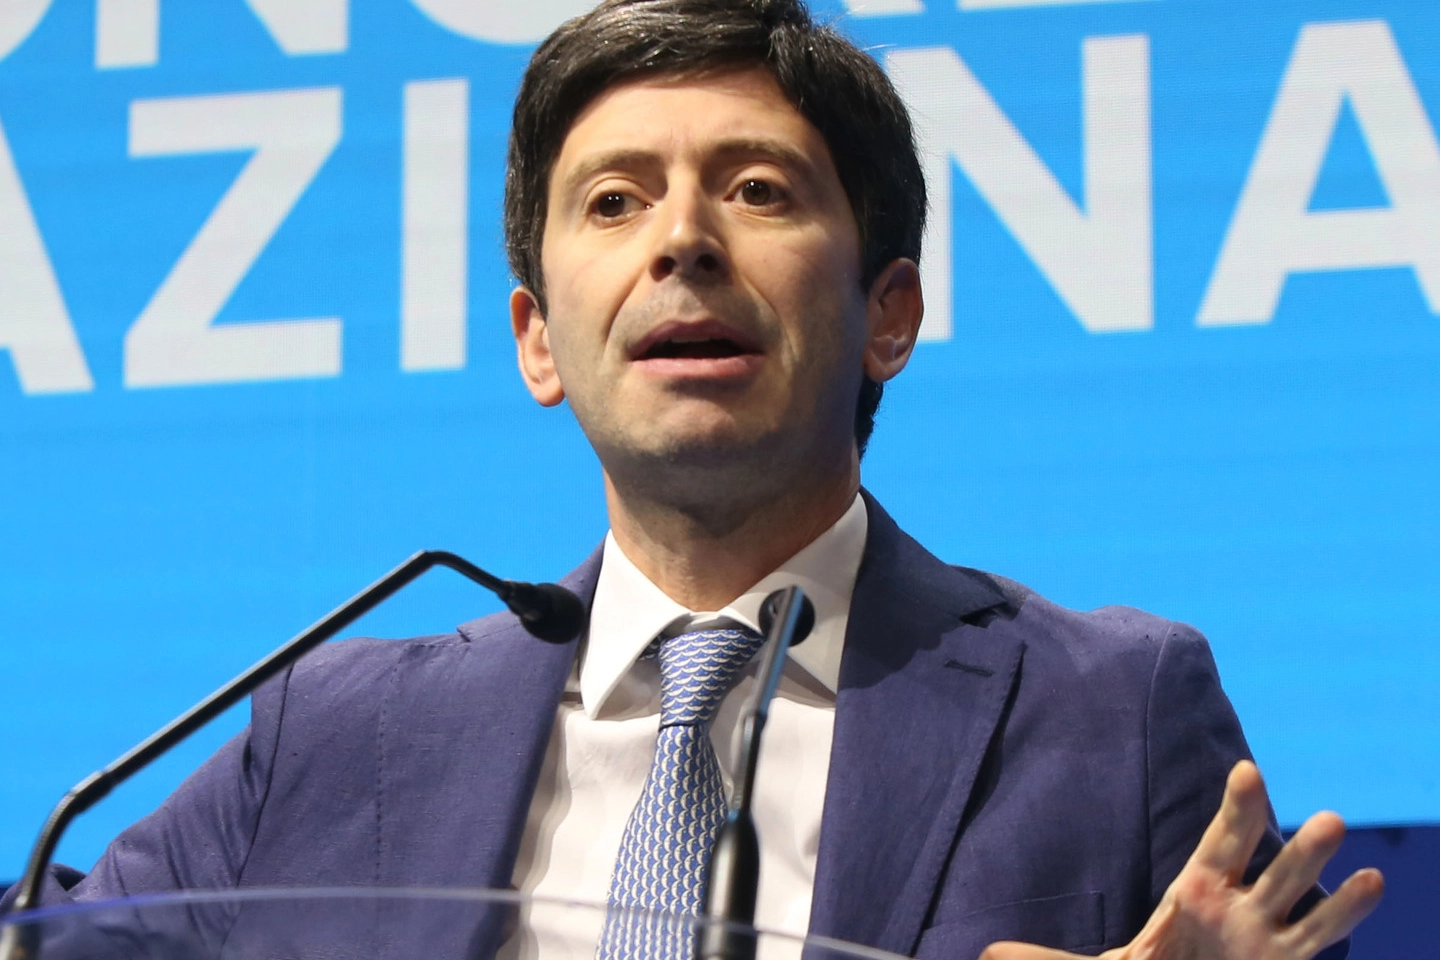 Roberto Speranza, 43 anni, ministro della Salute dal 2019, è segretario di Articolo Uno